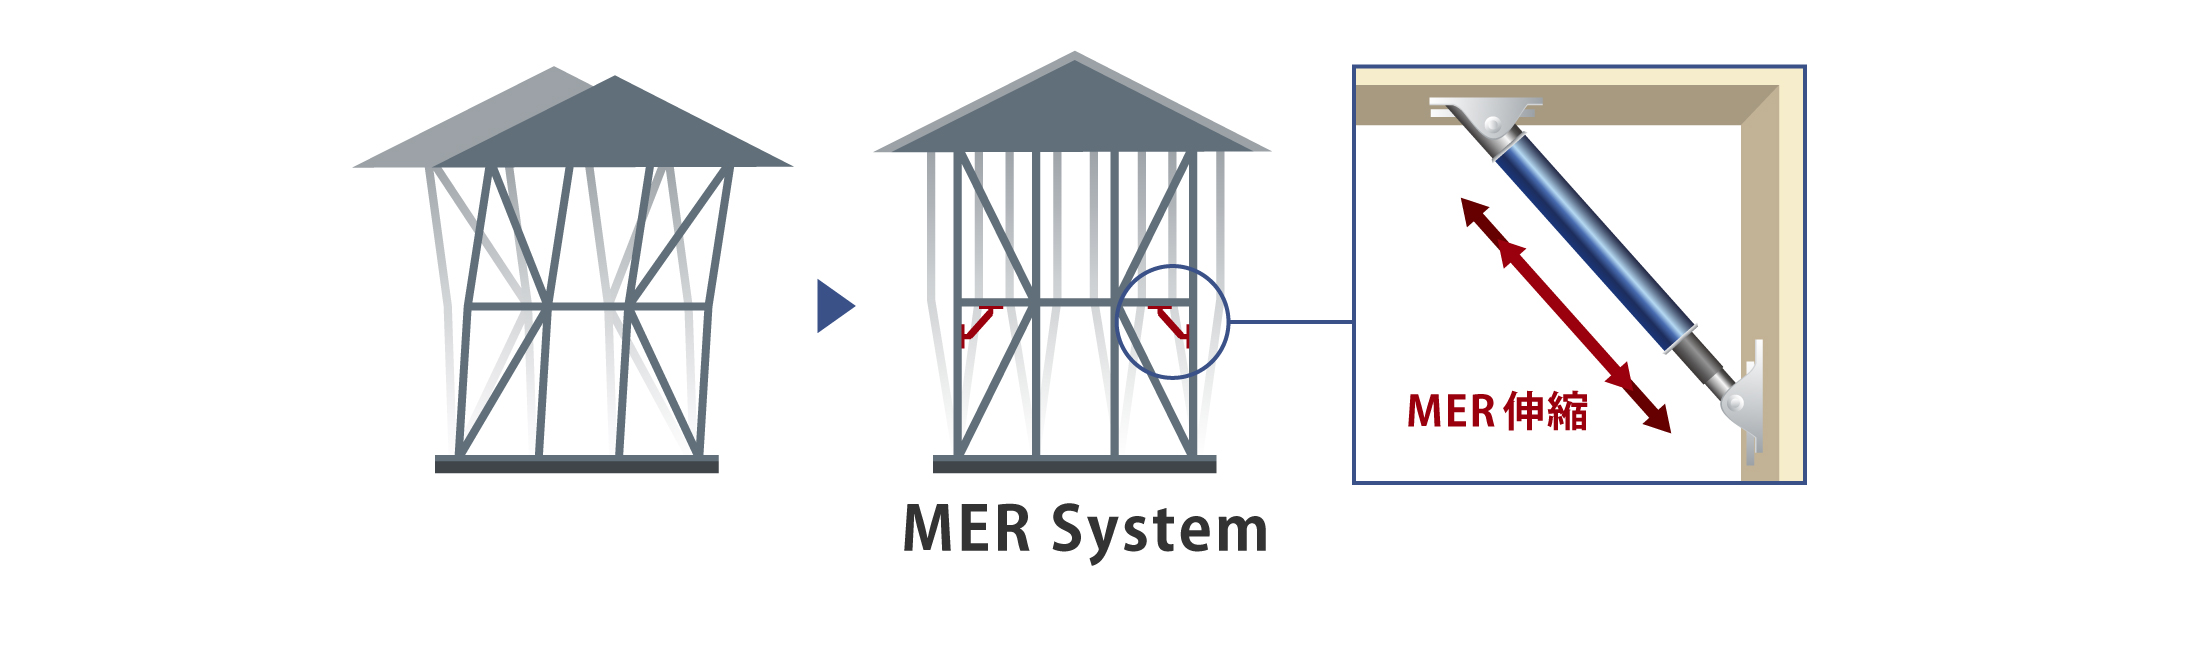 制震装置 MER System